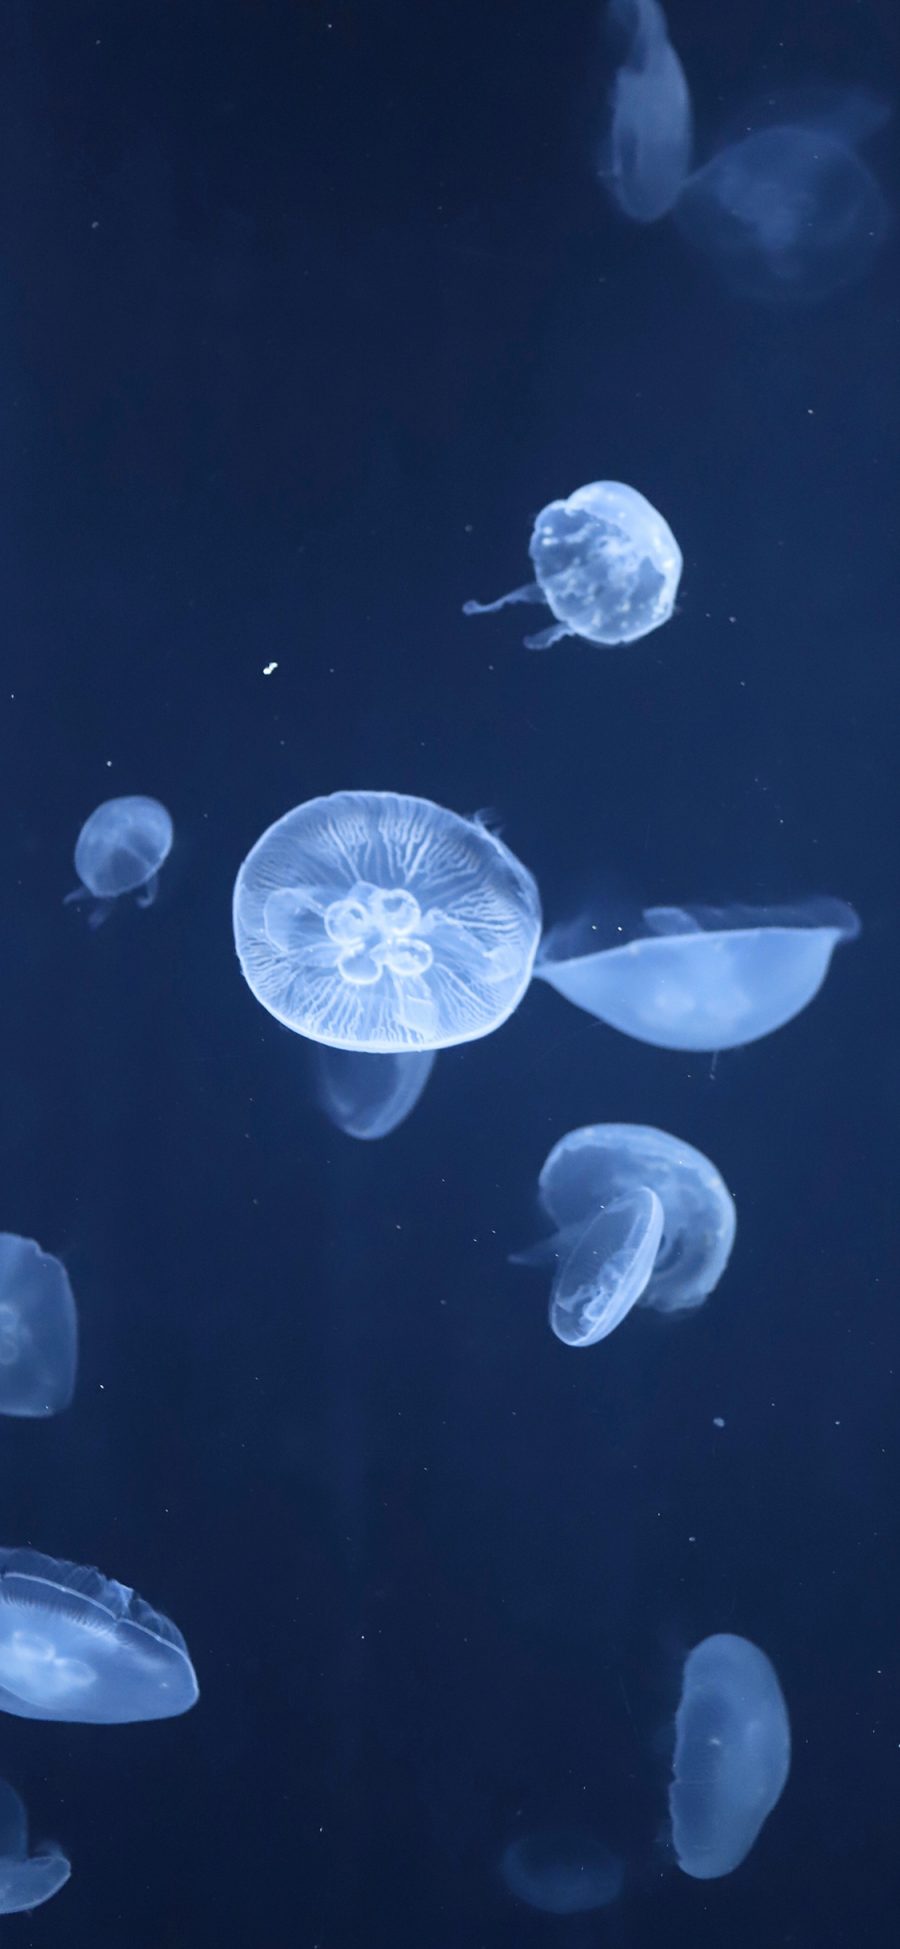 [2436×1125]水母 蓝色 海洋生物 游动 透明 苹果手机壁纸图片